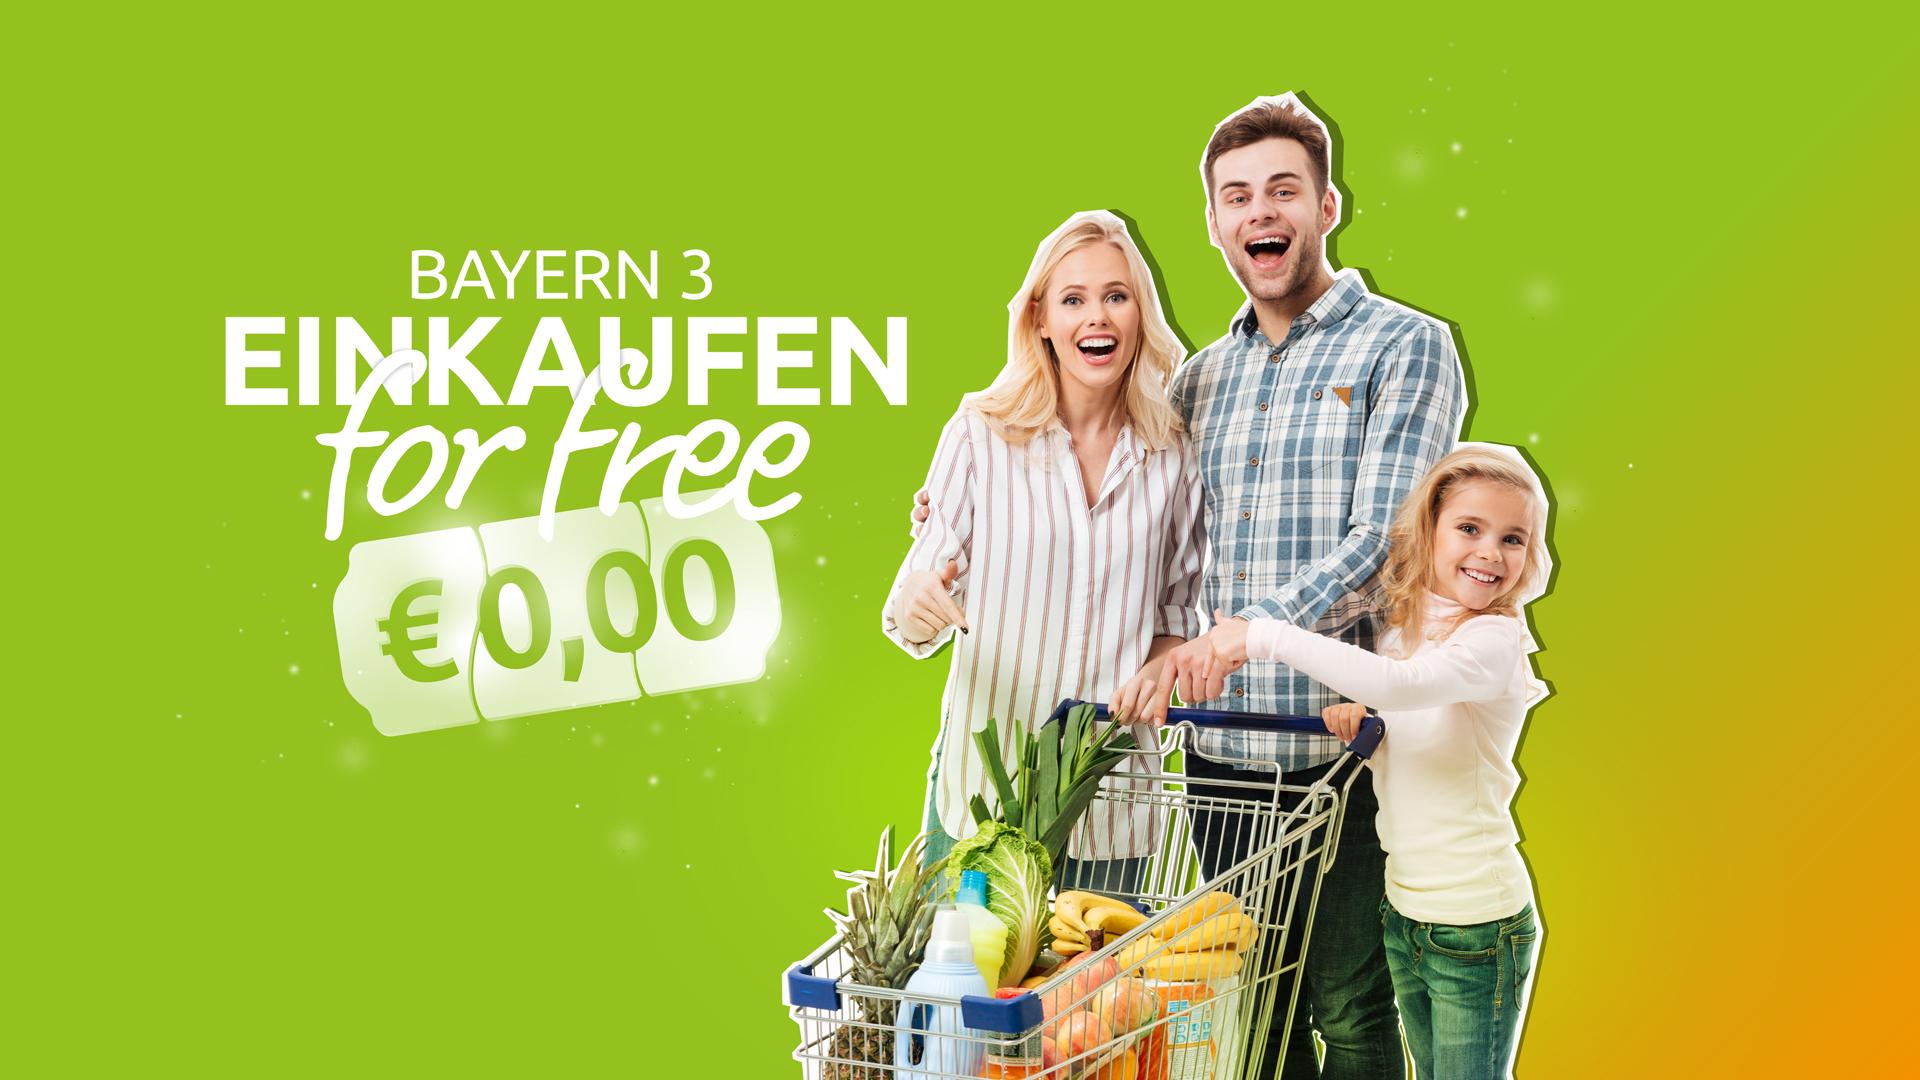 BAYERN 3 Einkaufen for free